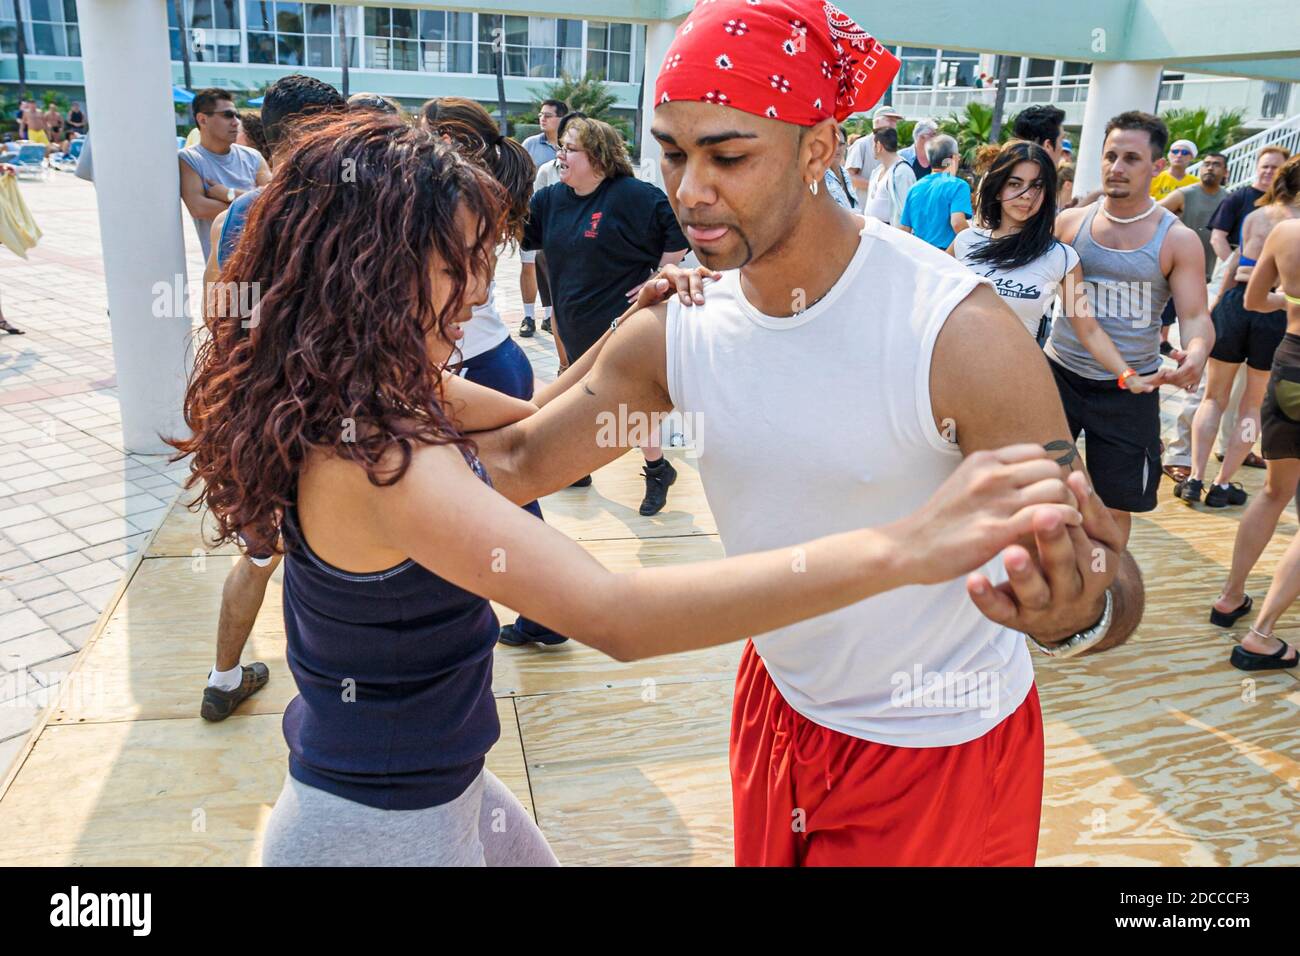 Miami Beach Florida, Hotel Deauville Beach Resort, Concurso Internacional de Hustle y Salsa, bailarines bailando hombre hispano hombres mujer mujer mujer pareja c Foto de stock